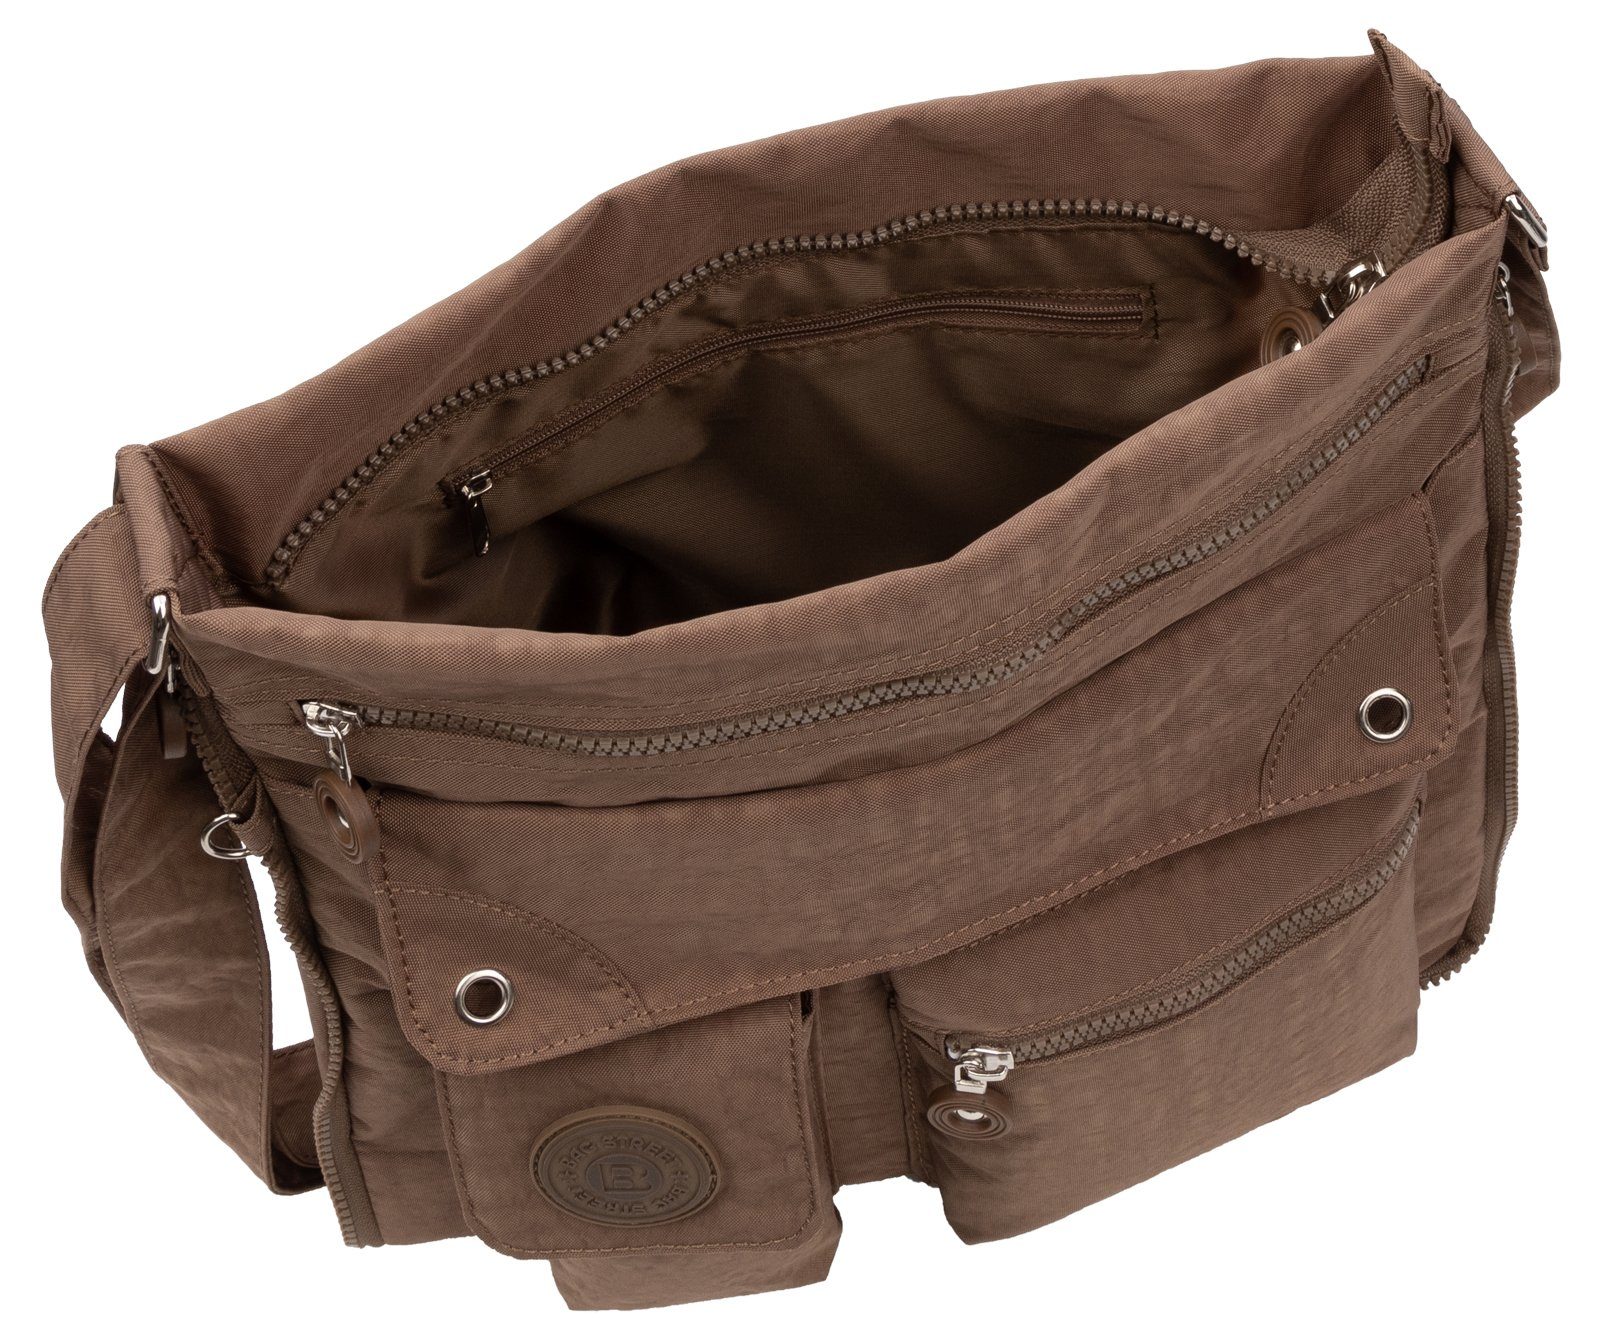 Handtasche STREET Braun BAG Schwarz, Schlüsseltasche Schultertasche, tragbar Umhängetasche als Schultertasche Umhängetasche Damentasche